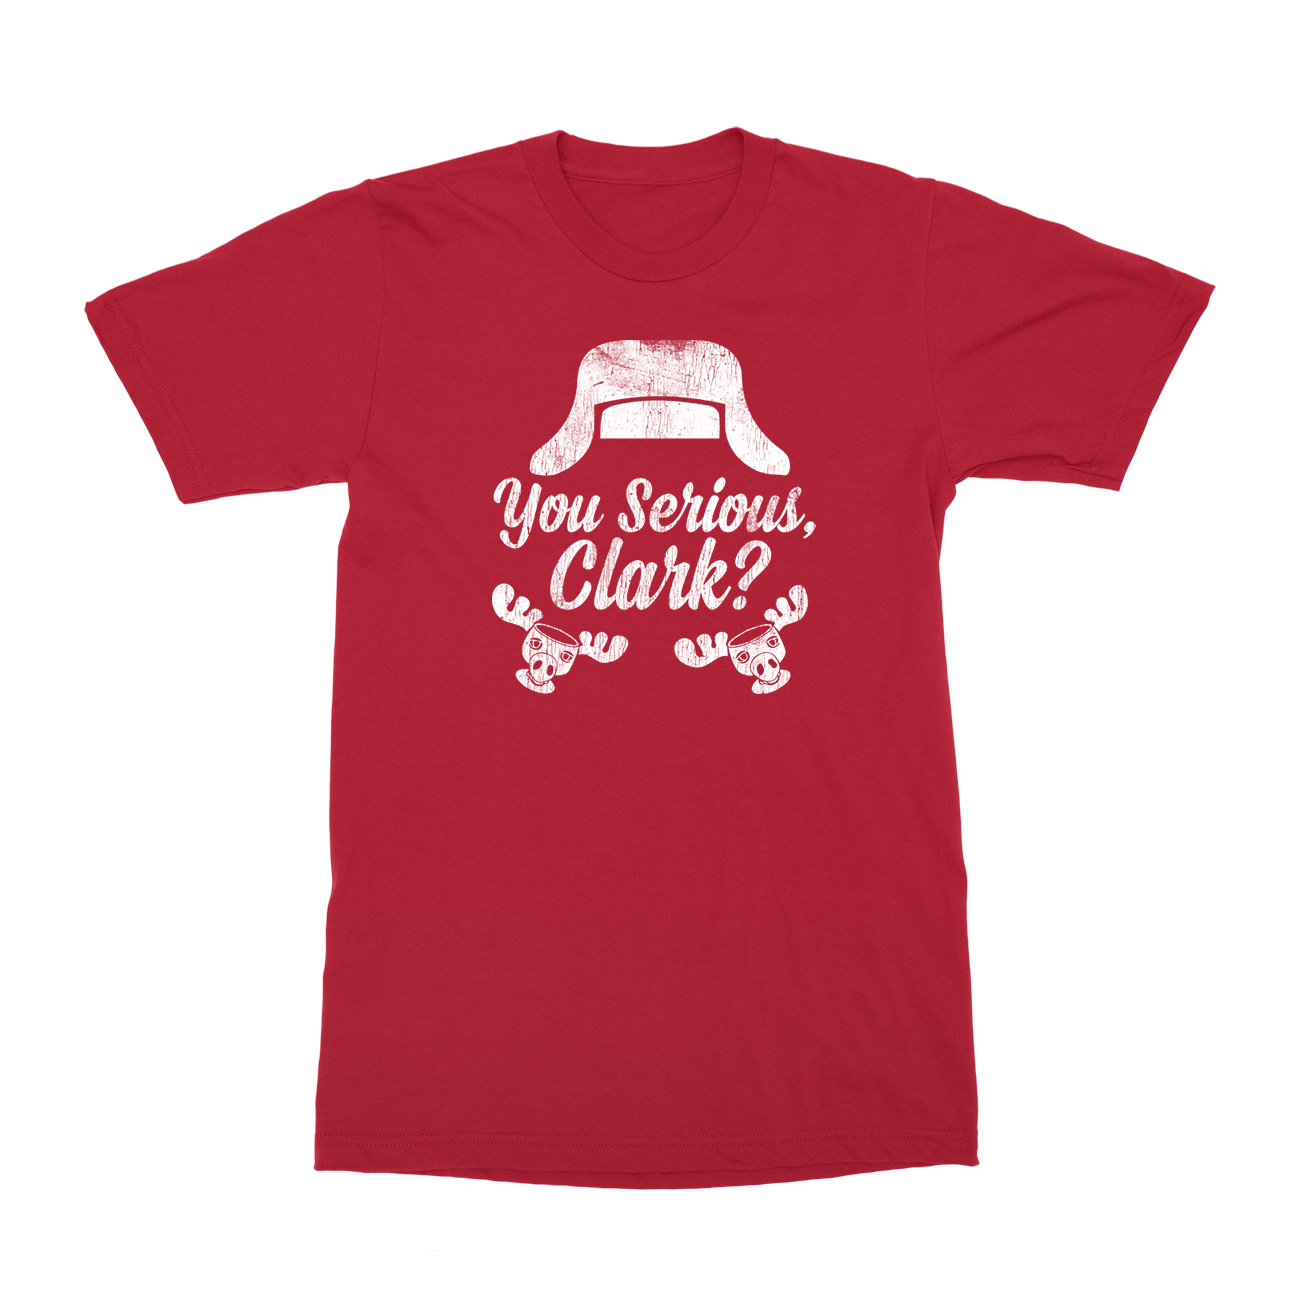 You serious Clark? T-Shirt